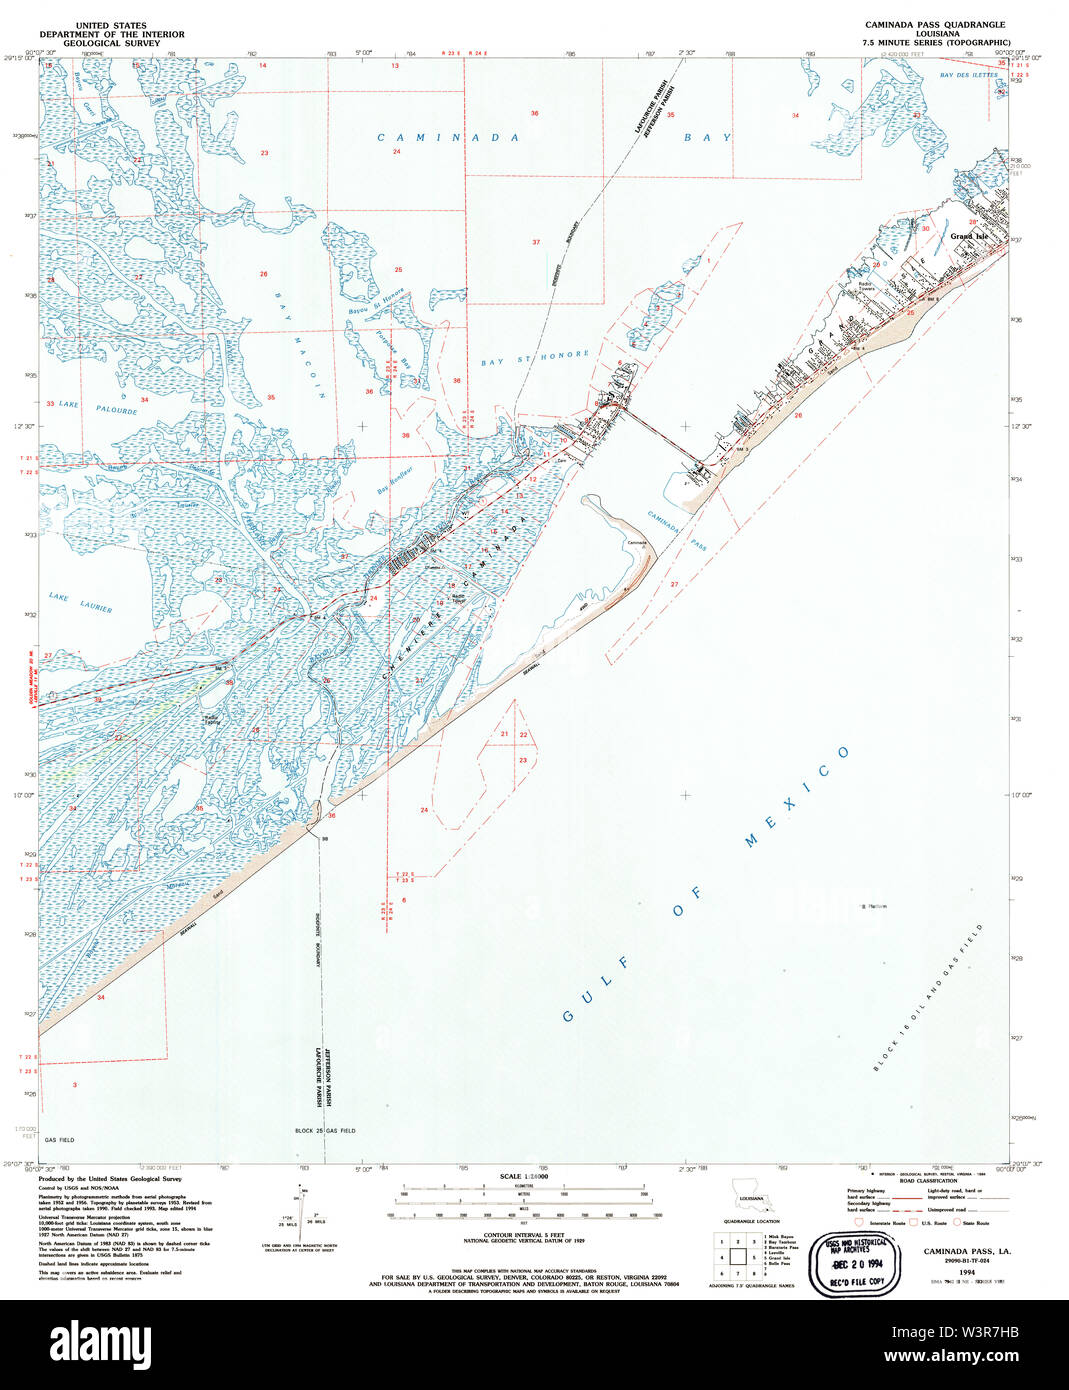 USGS TOPO Mappa Louisiana LA Caminada Pass 331599 1994 24000 Restauro Foto Stock